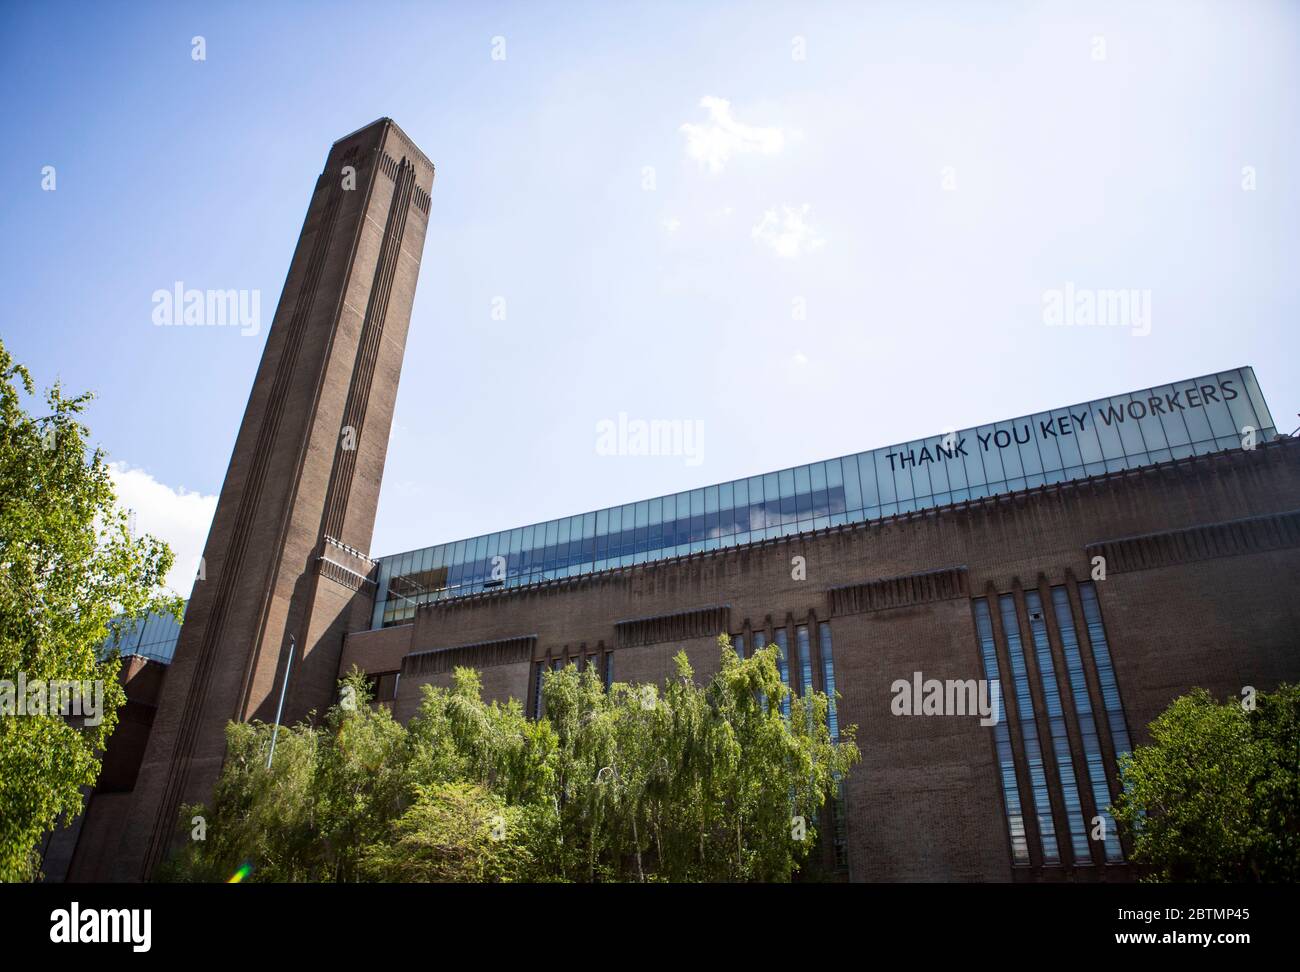 Tate Modern con el trabajador clave mensaje de agradecimiento Foto de stock